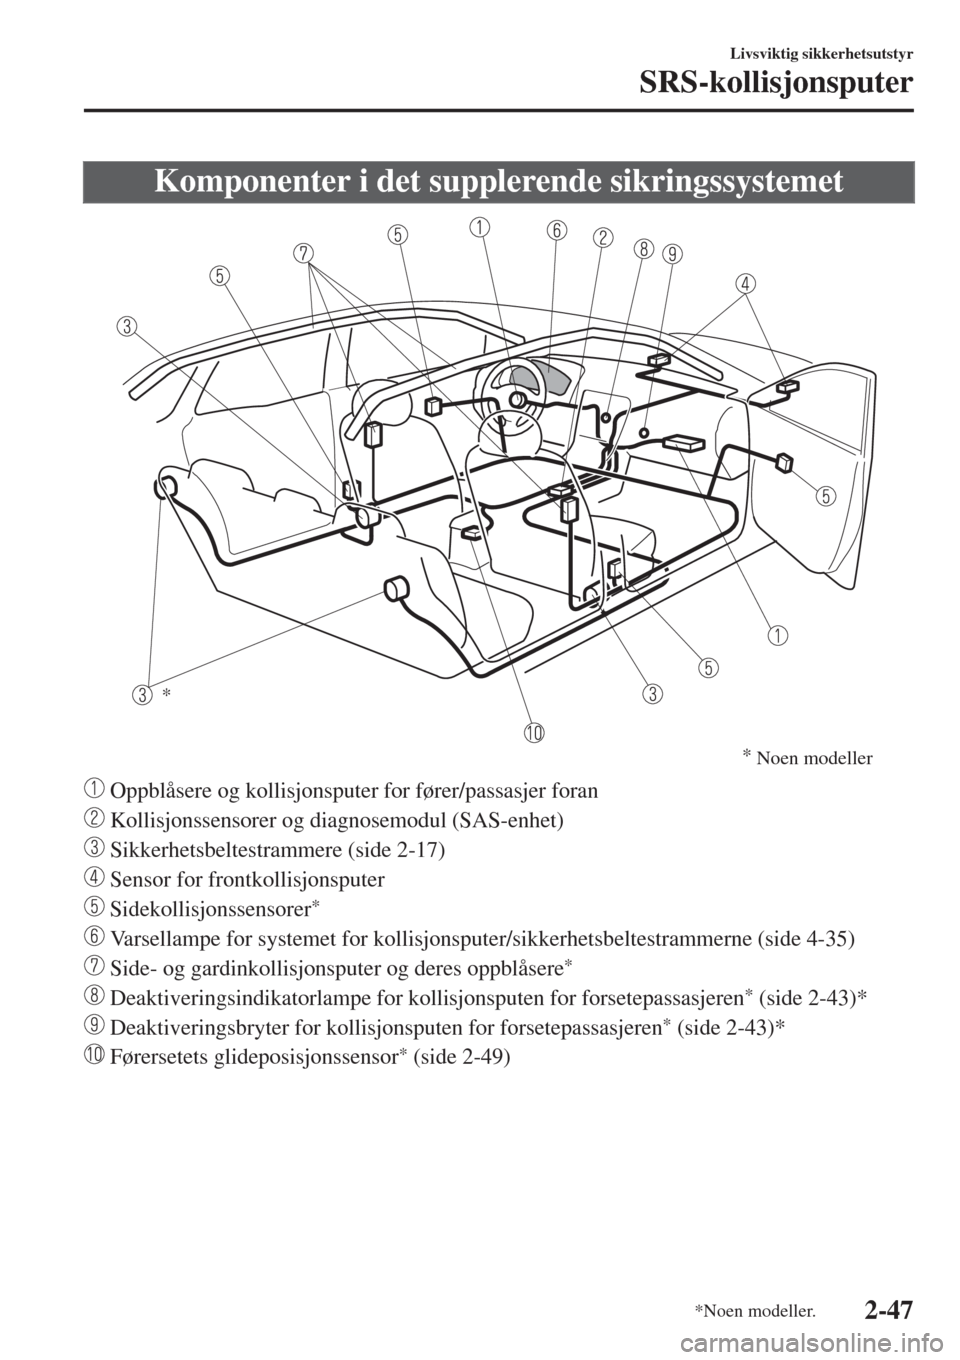 MAZDA MODEL CX-3 2015  Brukerhåndbok (in Norwegian) Komponenter i det supplerende sikringssystemet
*
*
Noen modeller
 Oppblåsere og kollisjonsputer for fører/passasjer foran
 Kollisjonssensorer og diagnosemodul (SAS-enhet)
 Sikkerhetsbeltestrammere (